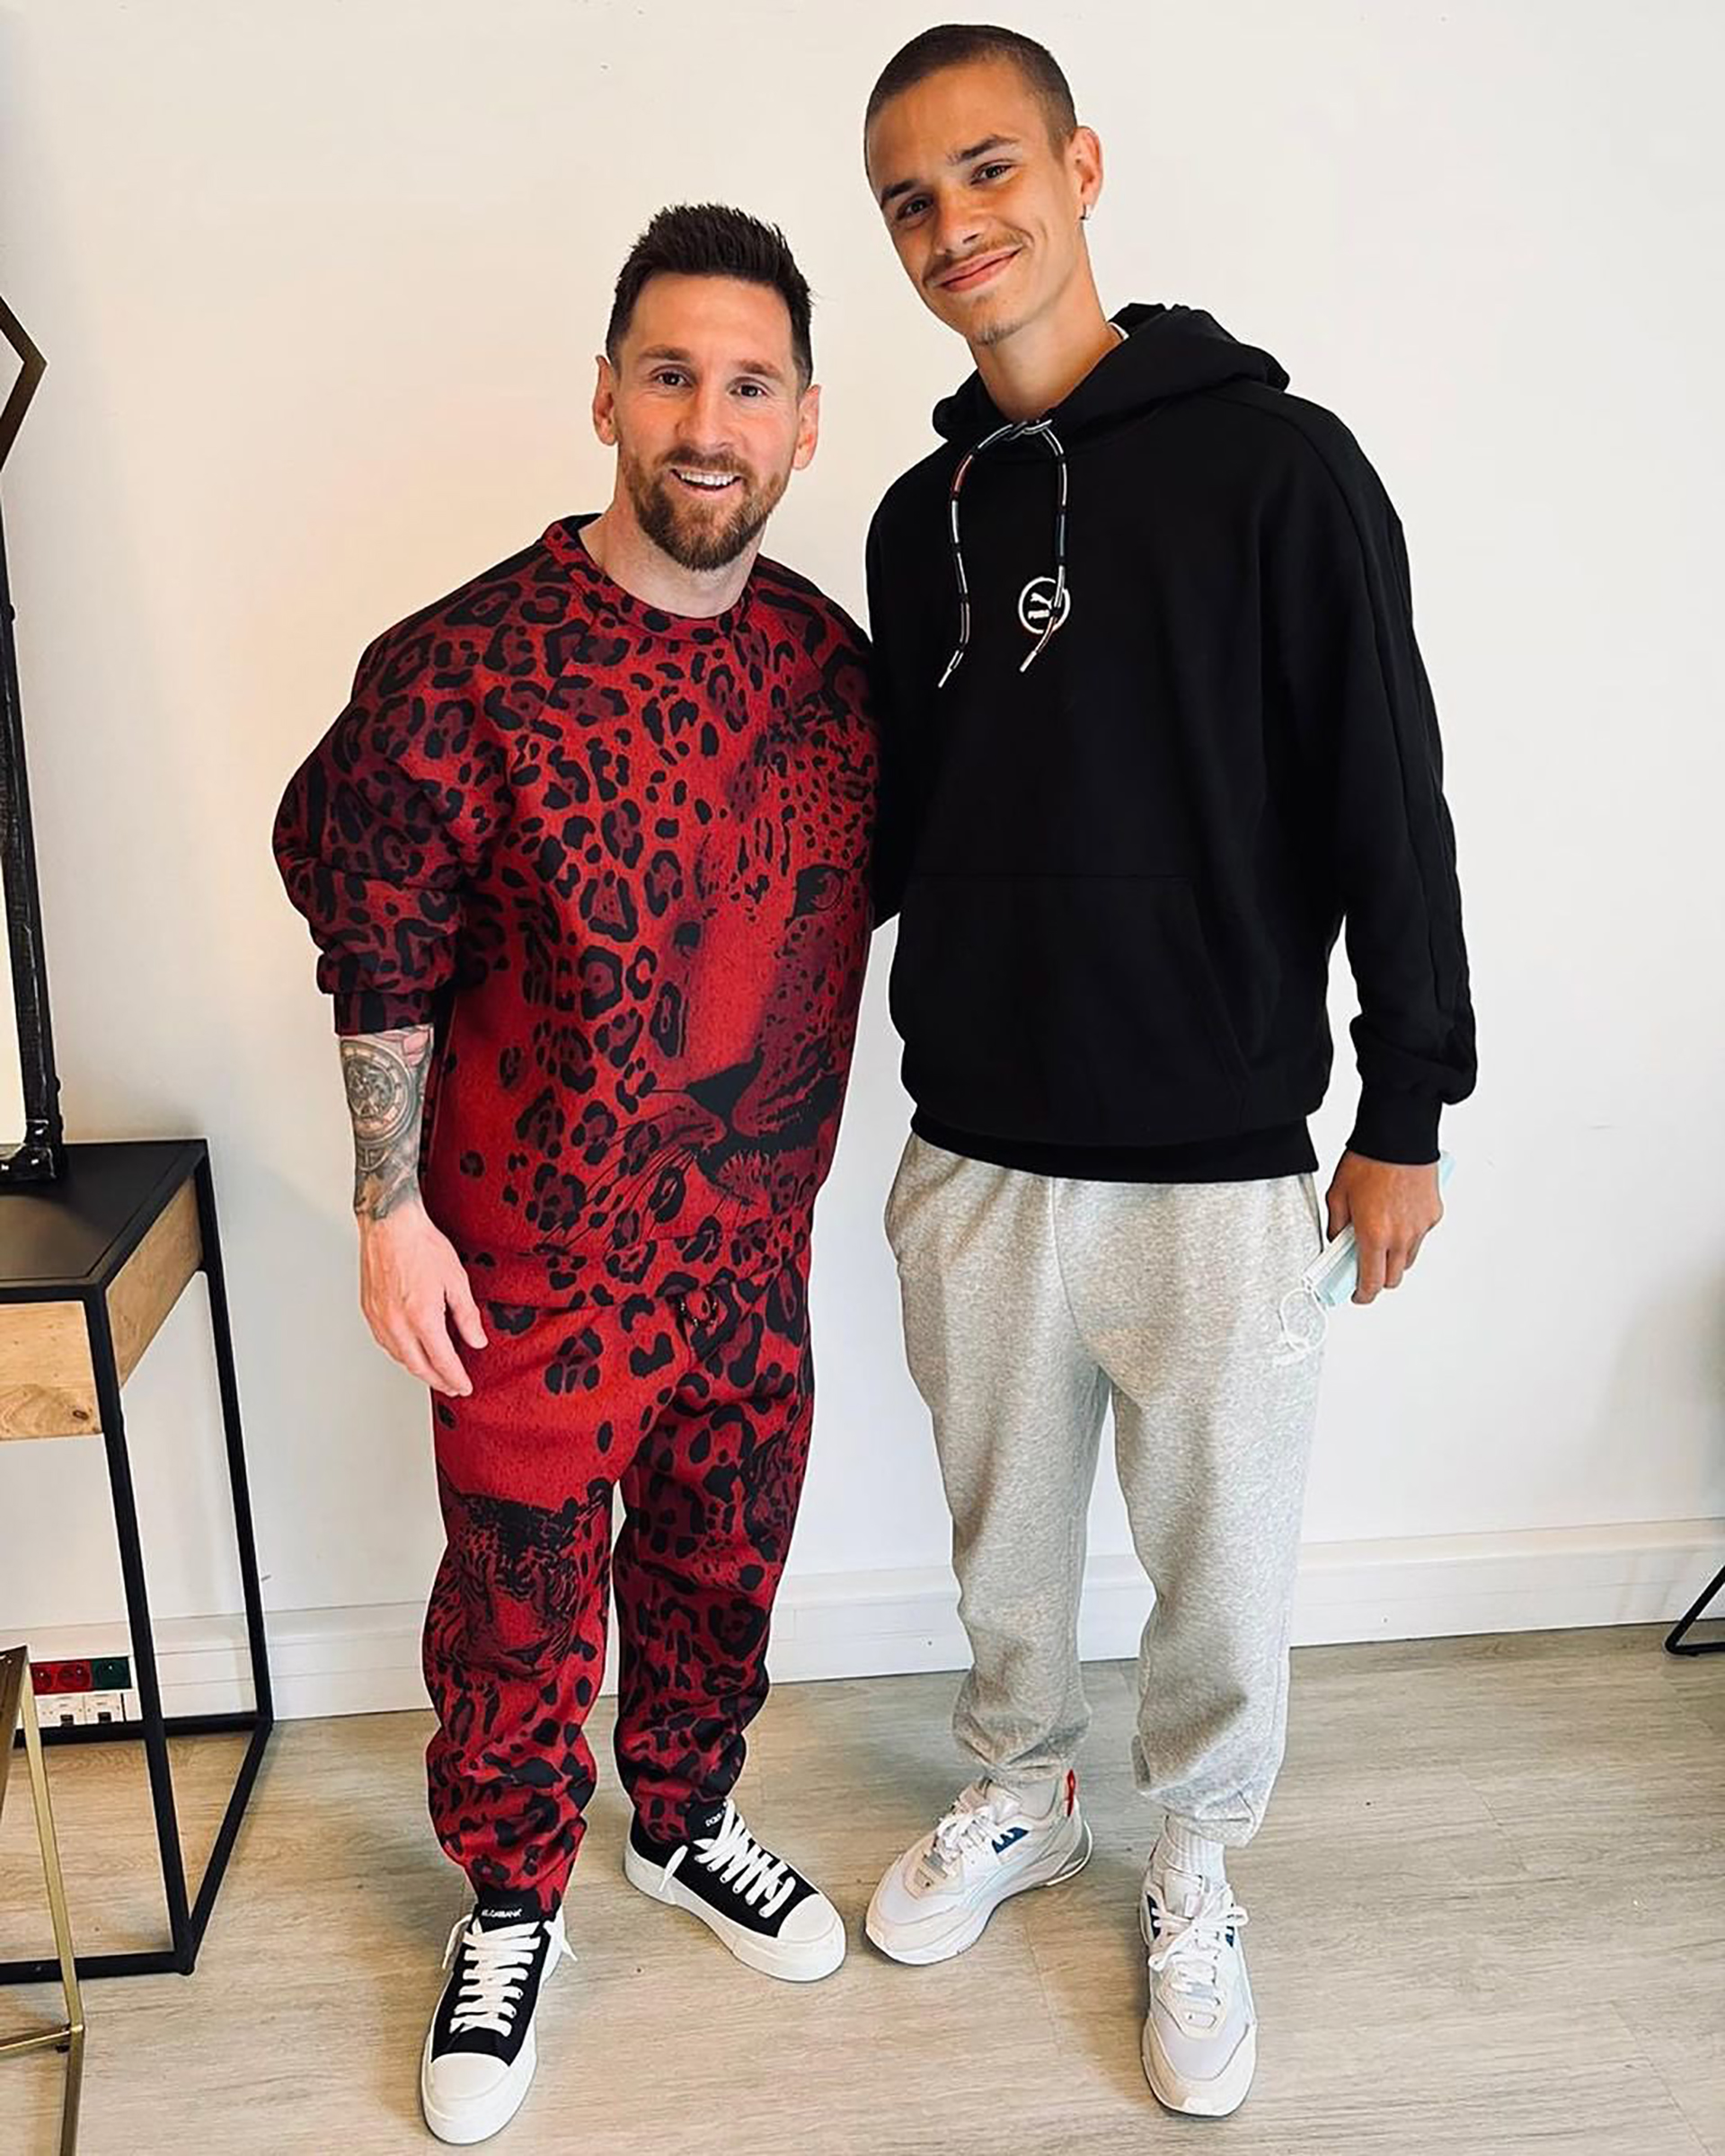 El excéntrico de Lionel Messi en su encuentro con el hijo de David Beckham que generó una catarata de memes y bromas en las redes - Infobae